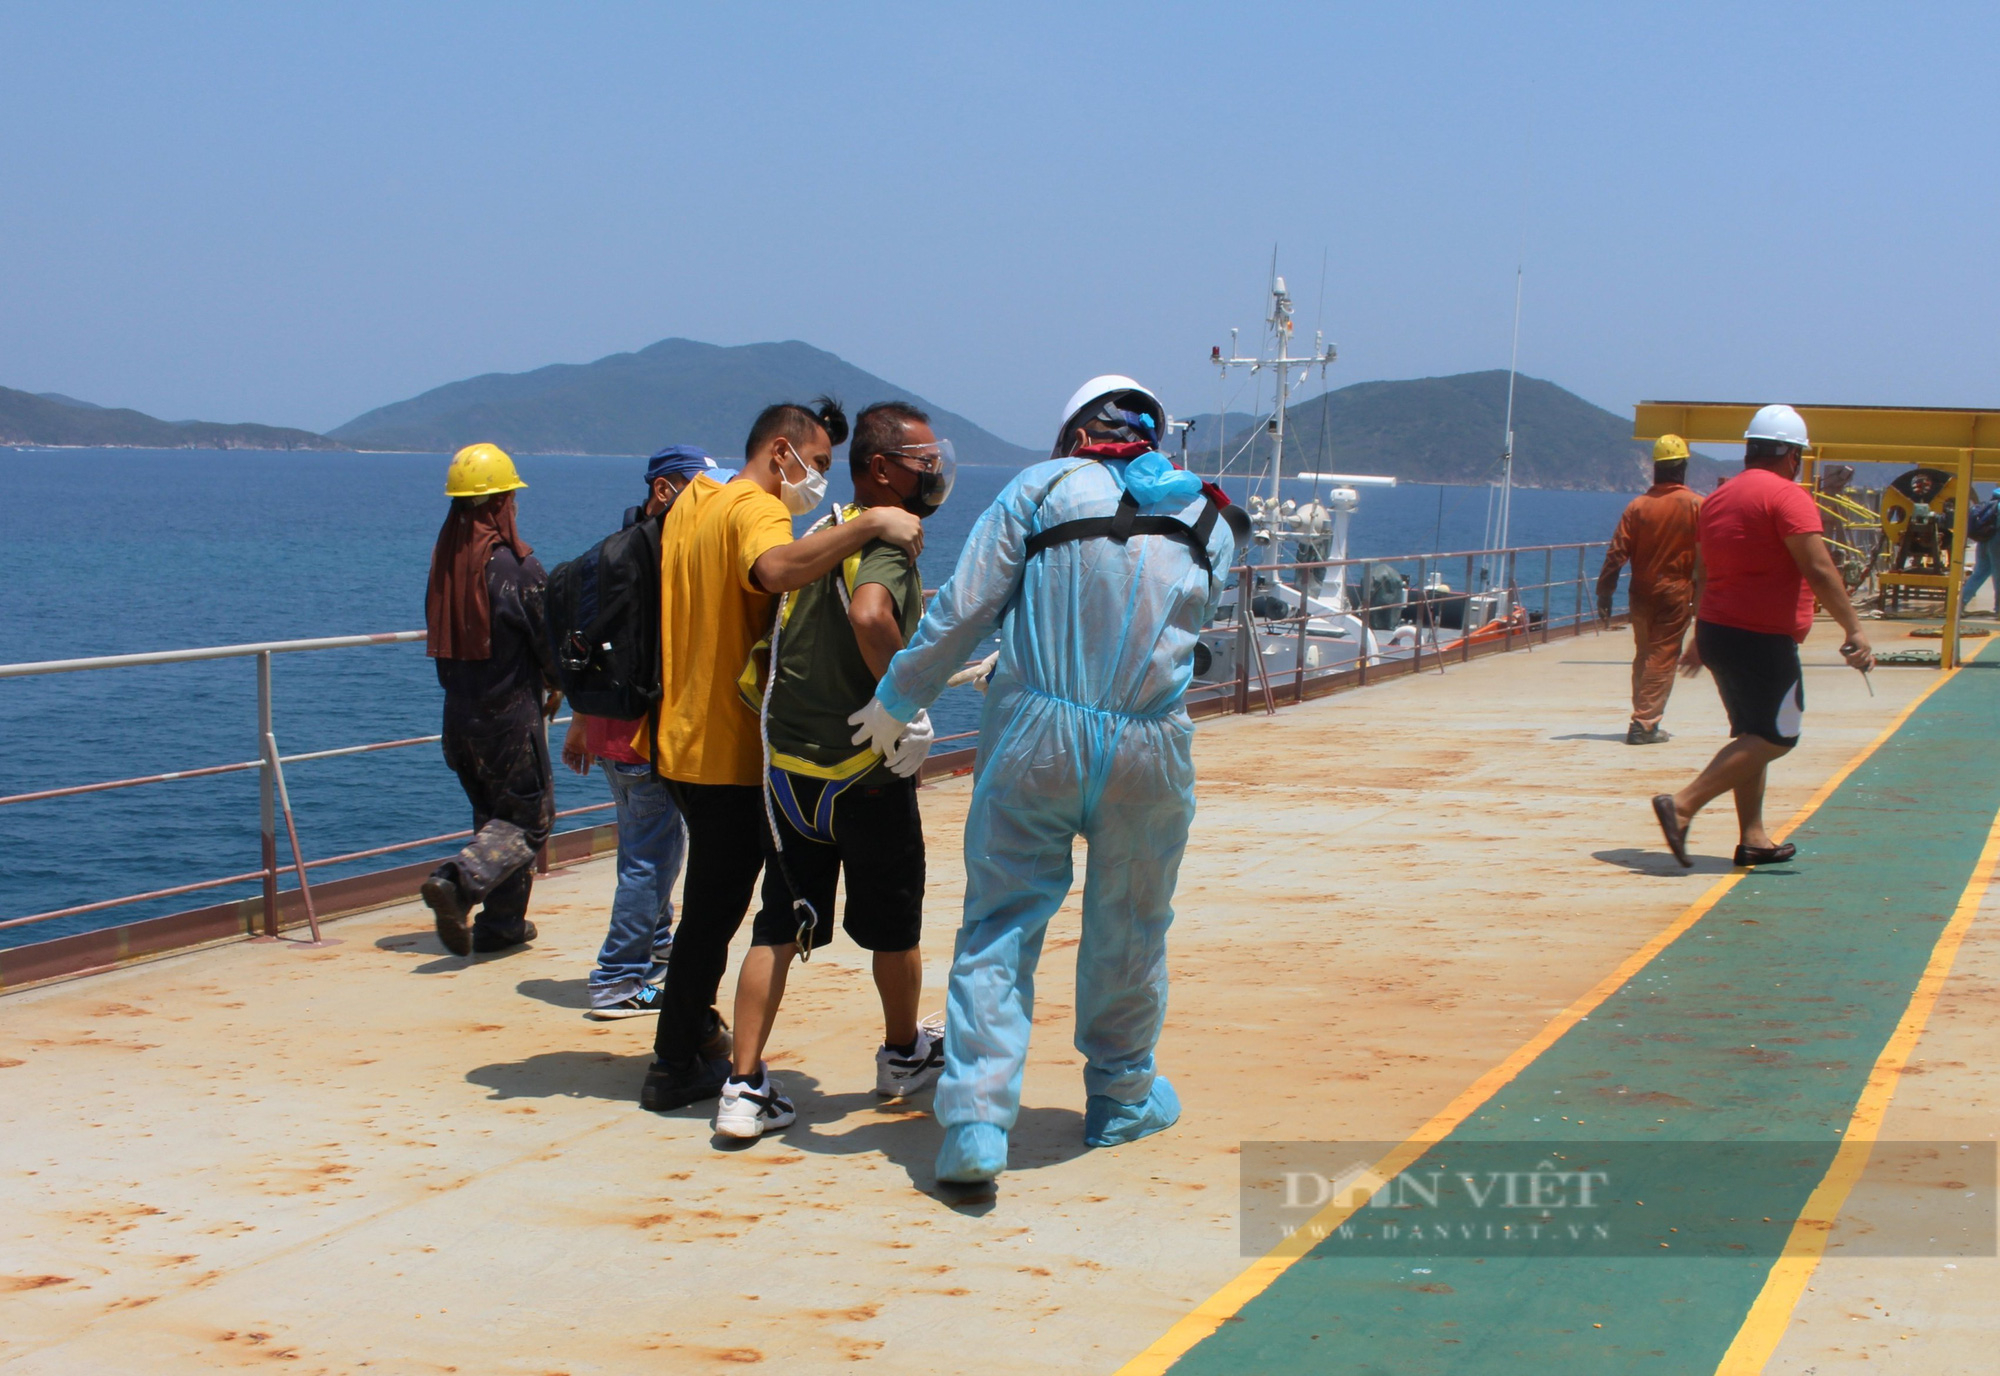 Khánh Hòa; Cứu thành công thuyền viên nước ngoài trong tình trạng nguy hiểm  - Ảnh 2.